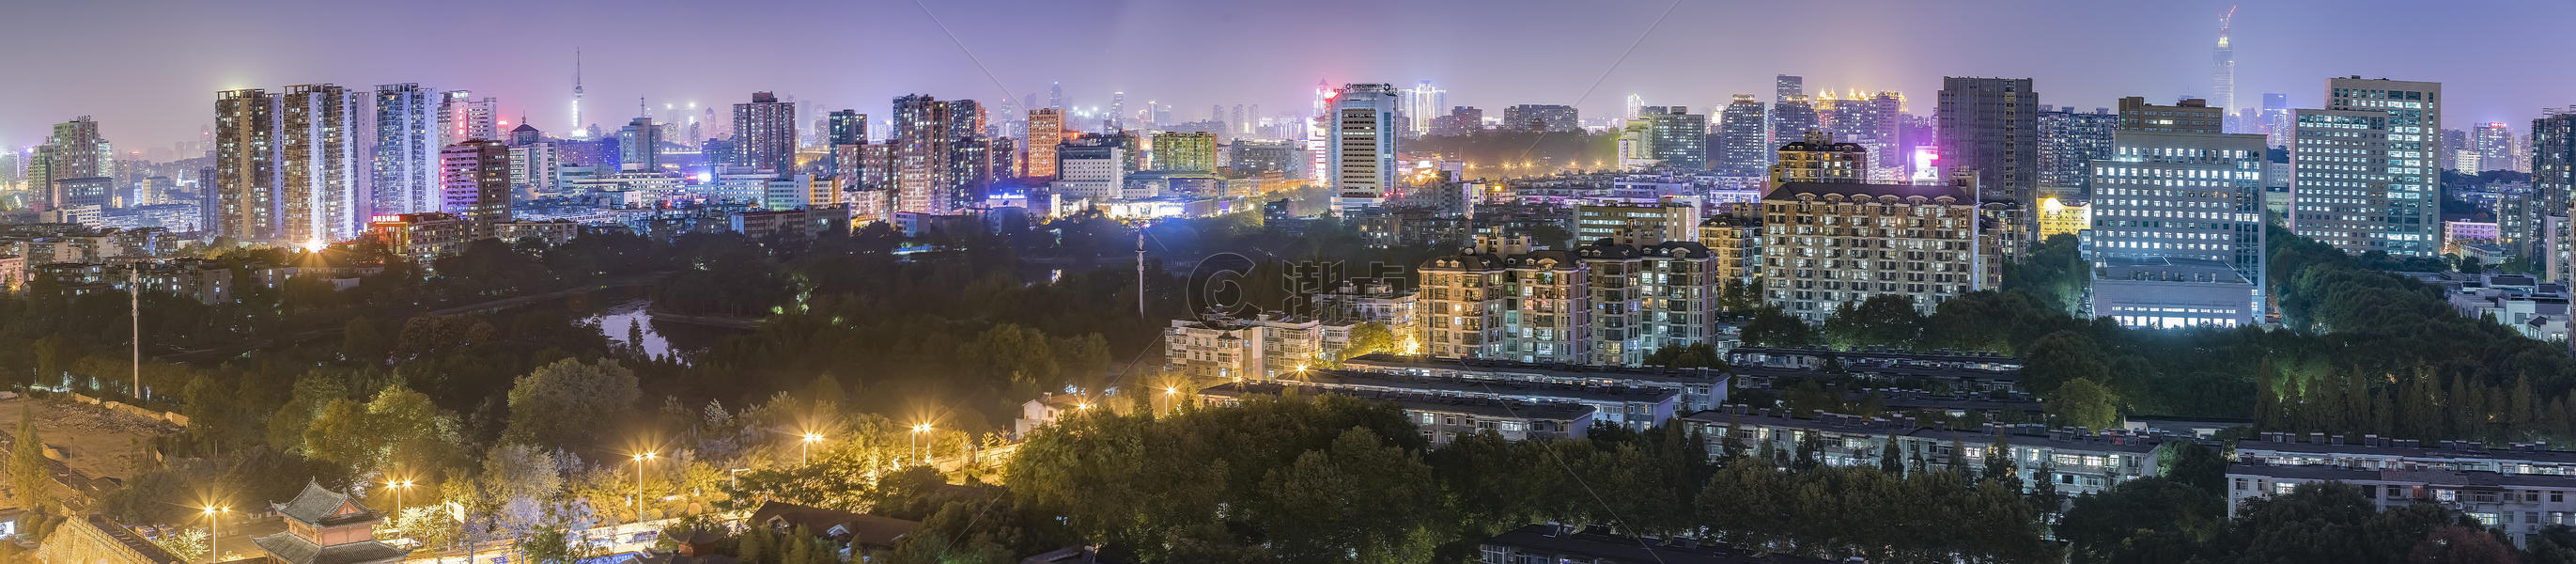 都市夜色全景美图图片素材免费下载